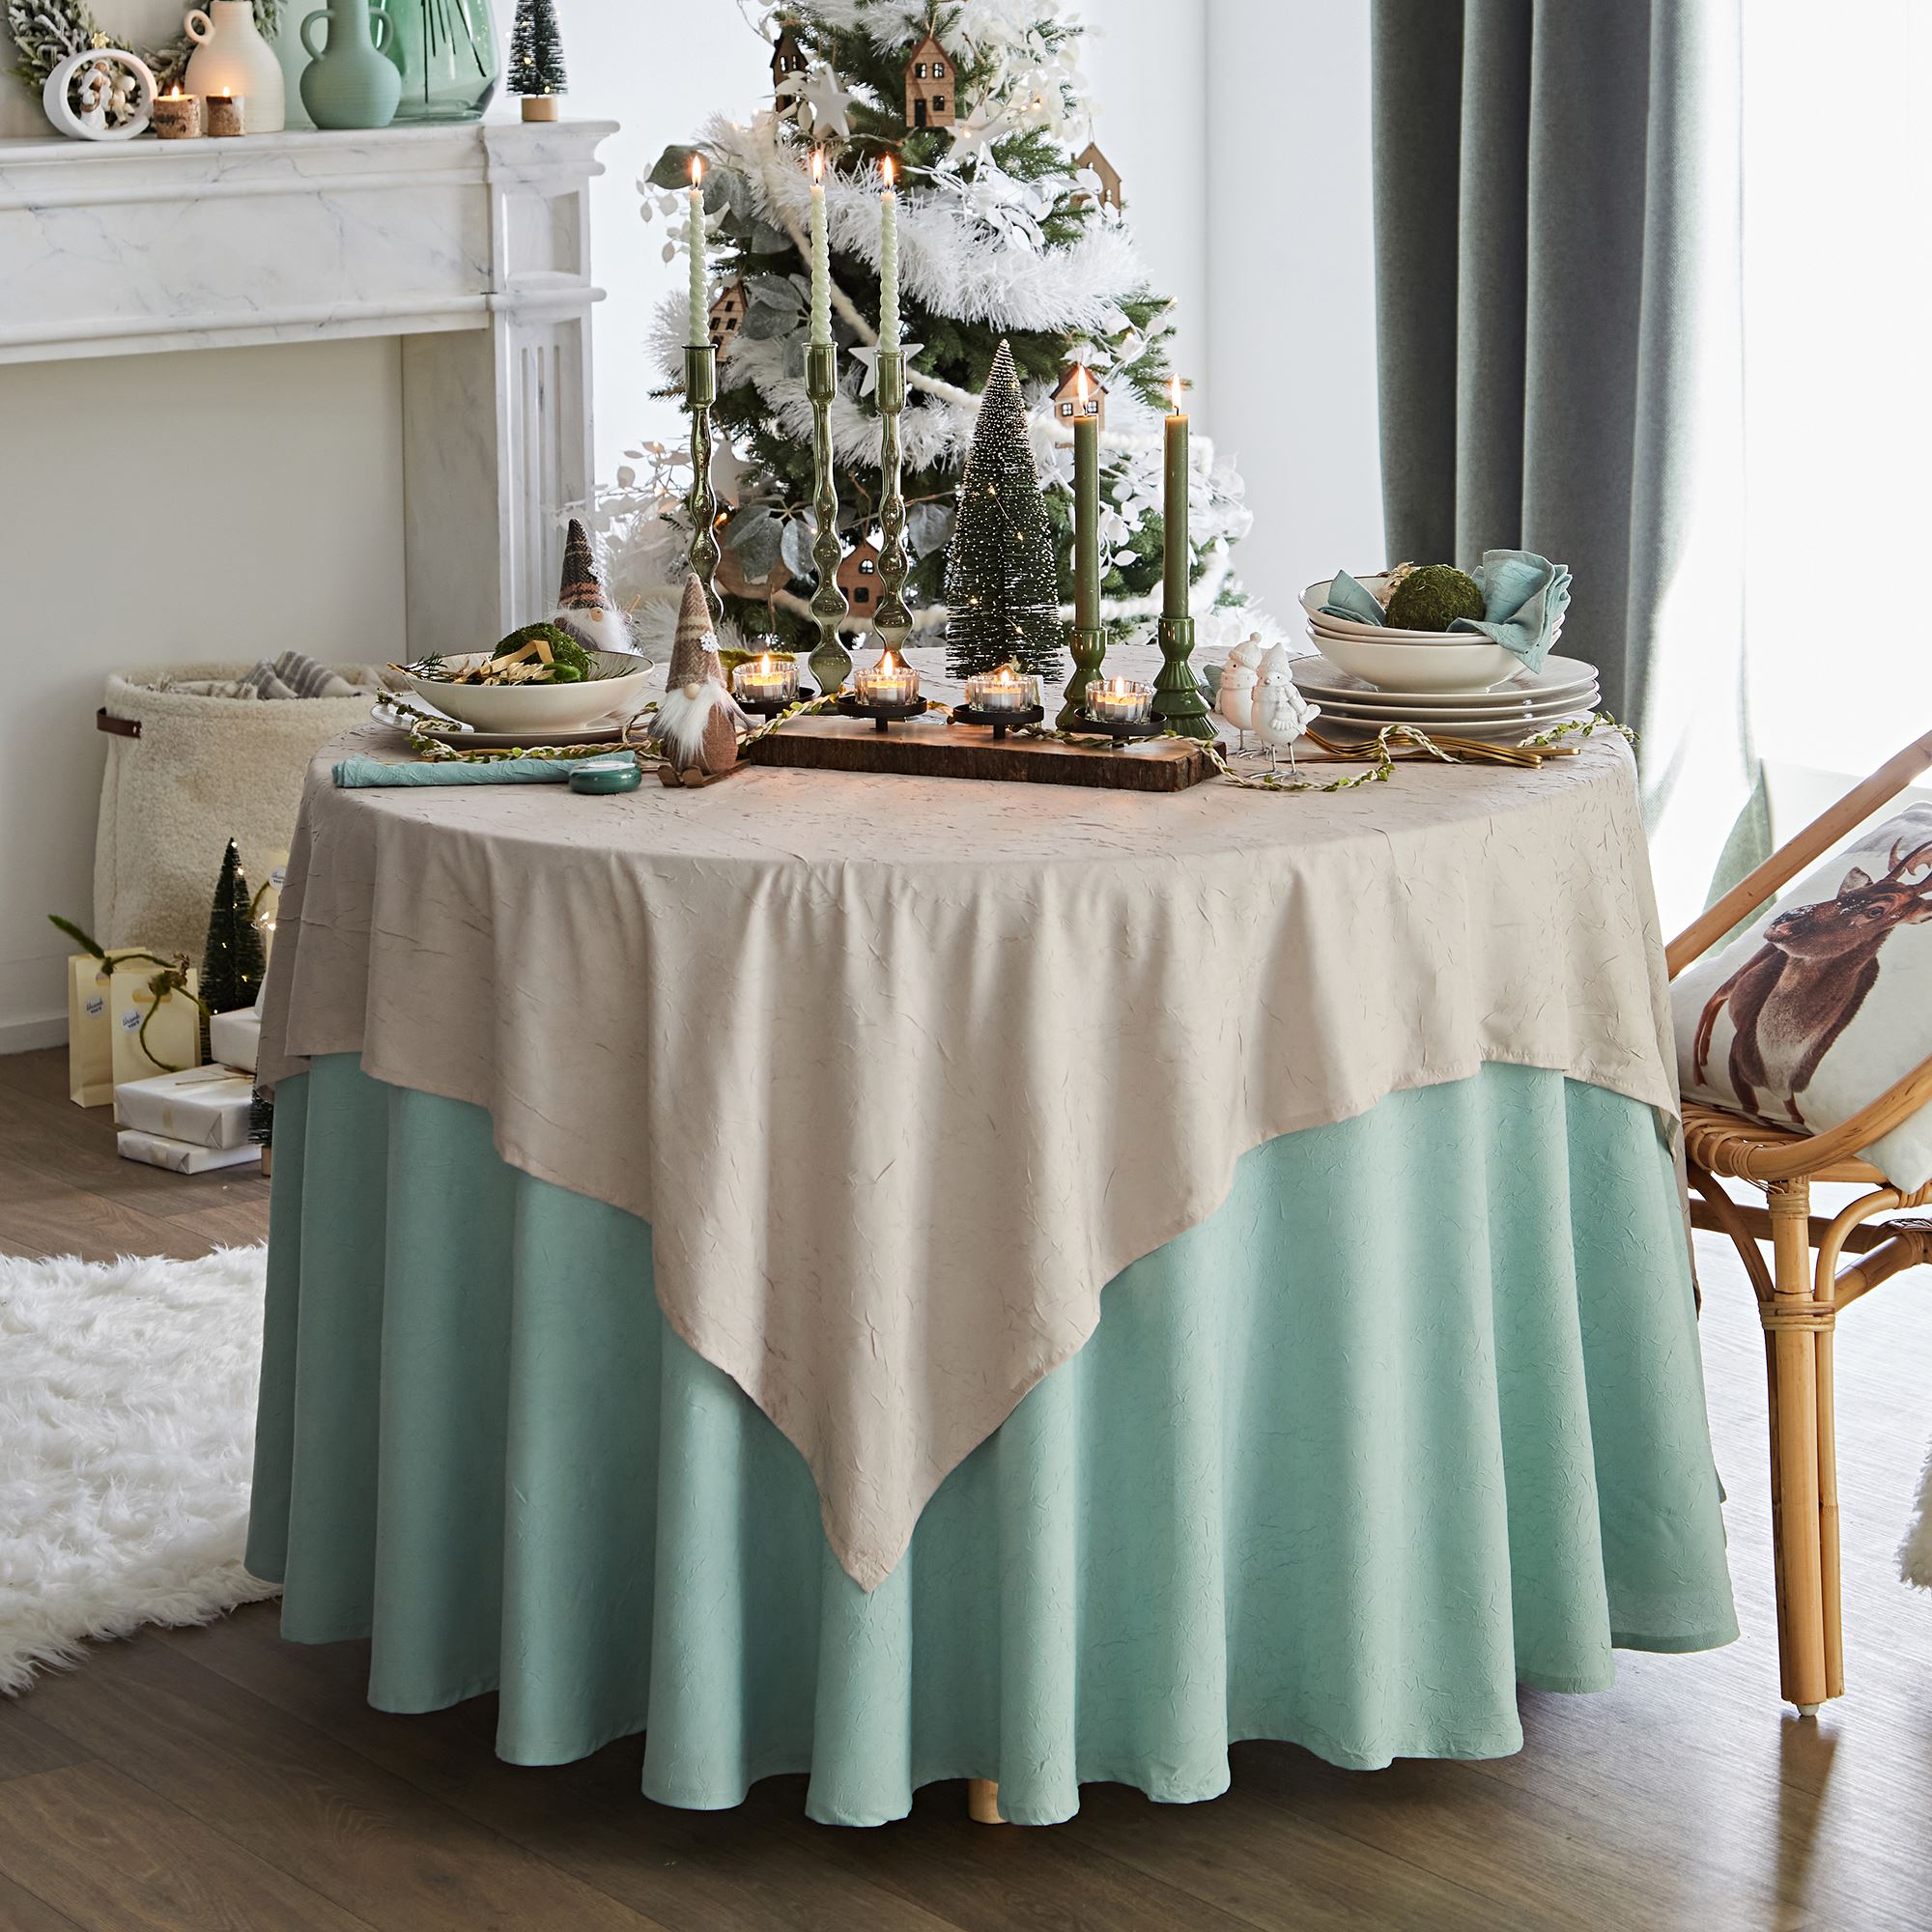 serviette de table 45x45 vert céladon en polyester